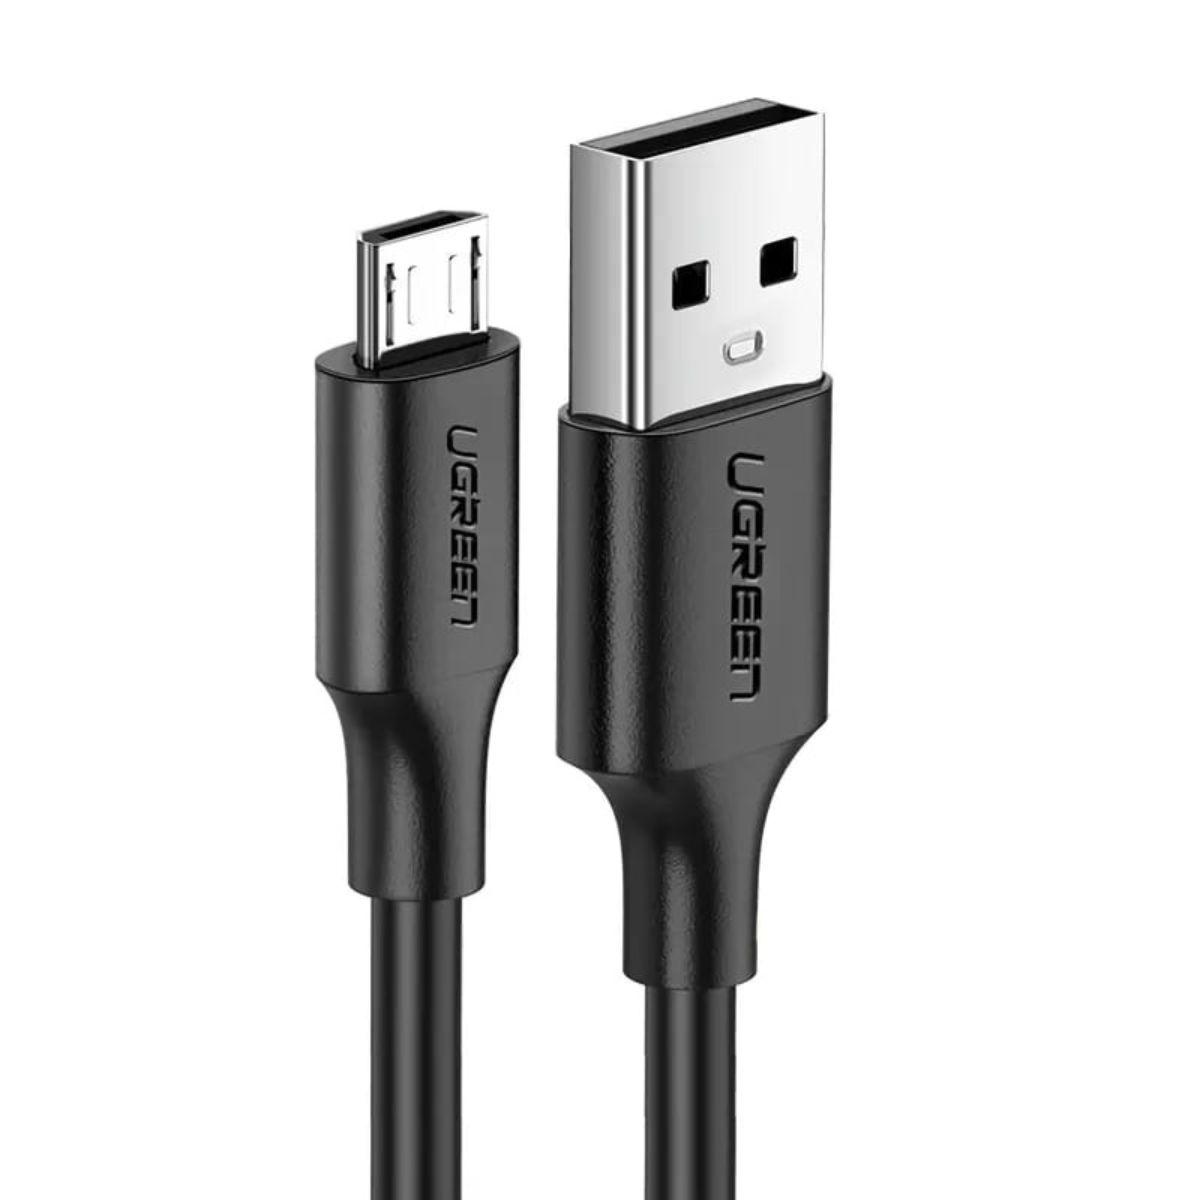 Cáp sạc nhanh USB ra Micro USB Ugreen 60134 US289 chiều dài 25cm, màu đen, sạc nhanh 2.0A